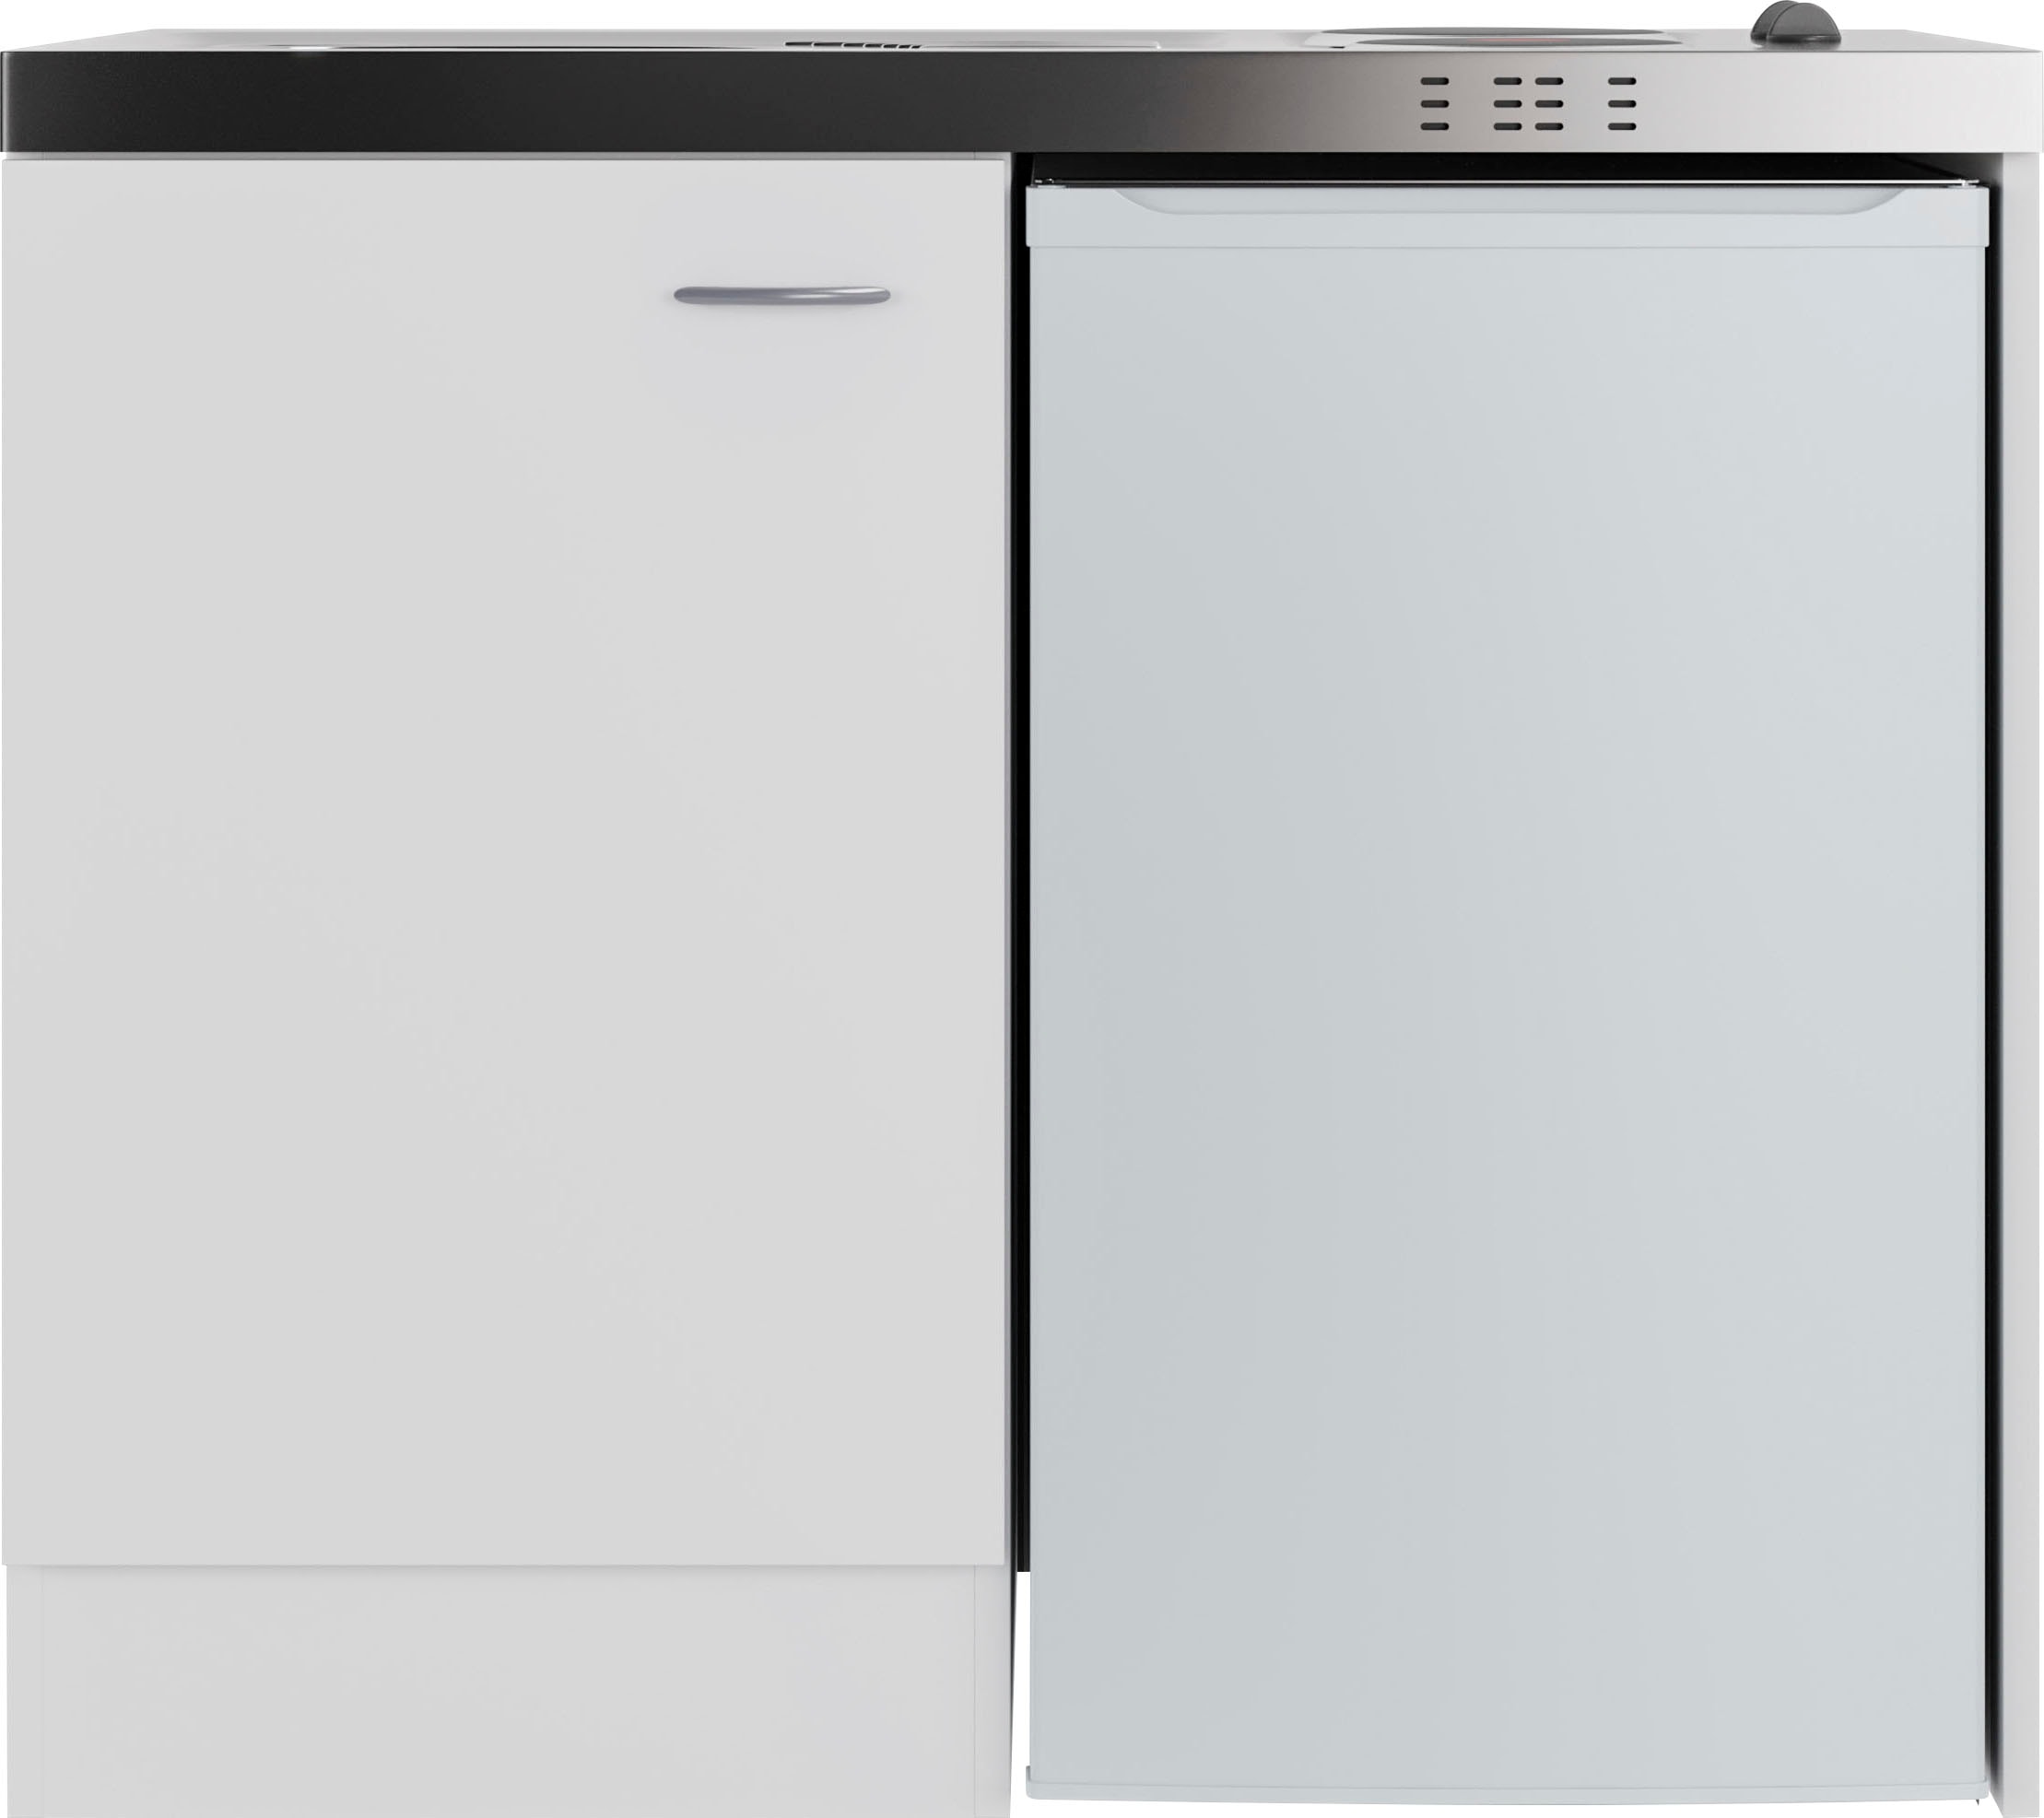 Flex-Well Küche »Pantry«, Gesamtbreite 100 cm, mit DUO Kochfeld und Kühlschrank